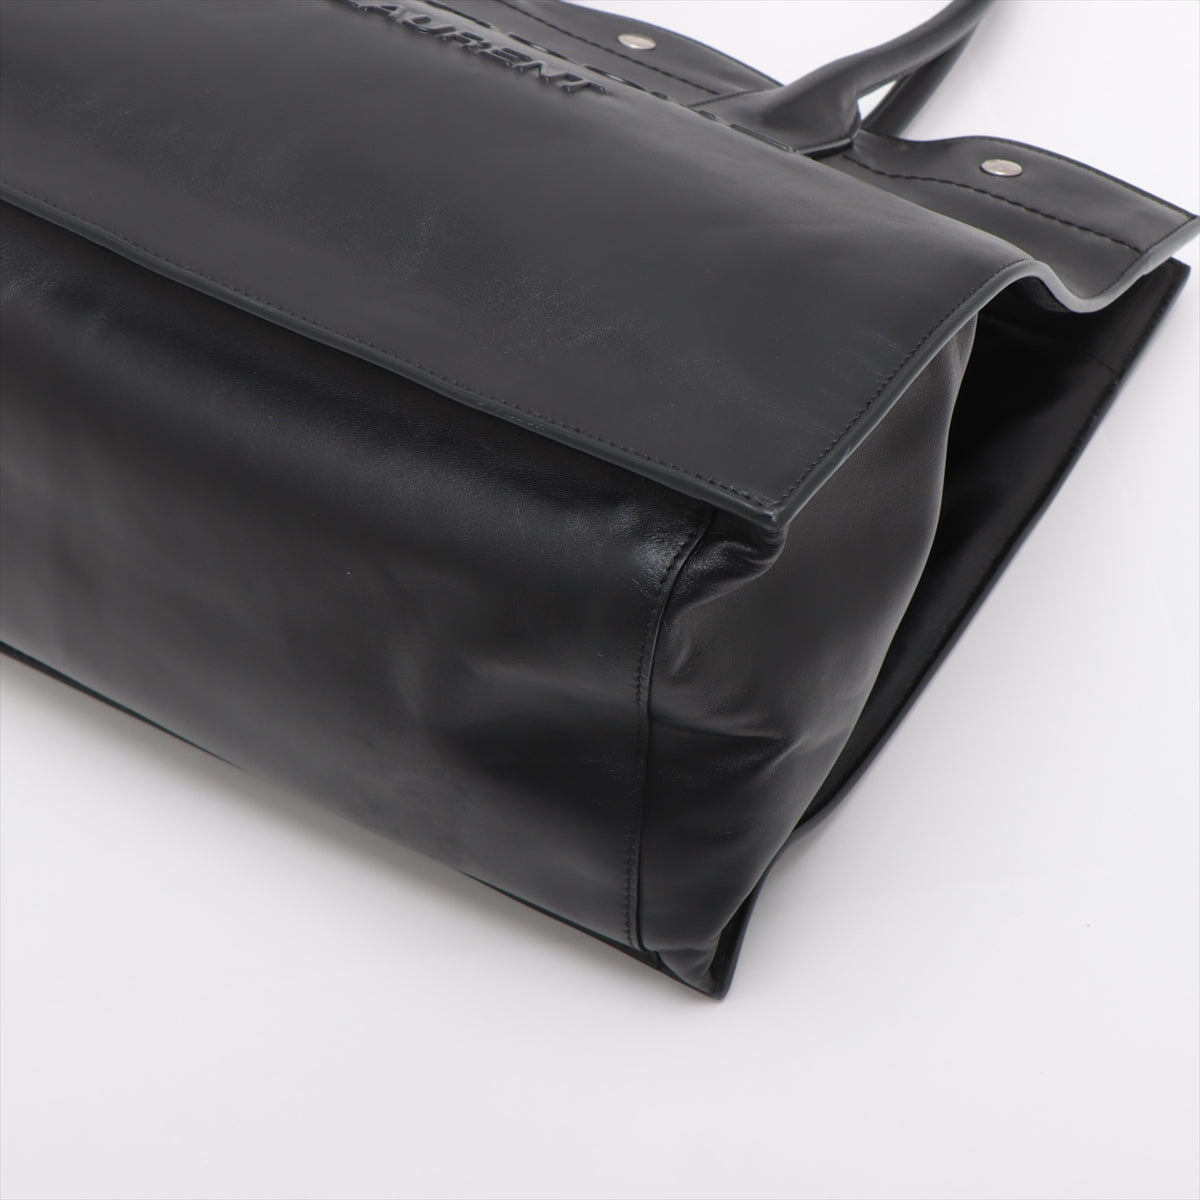 Saint Laurent  Livinghouse Leather  Bag Black 686266